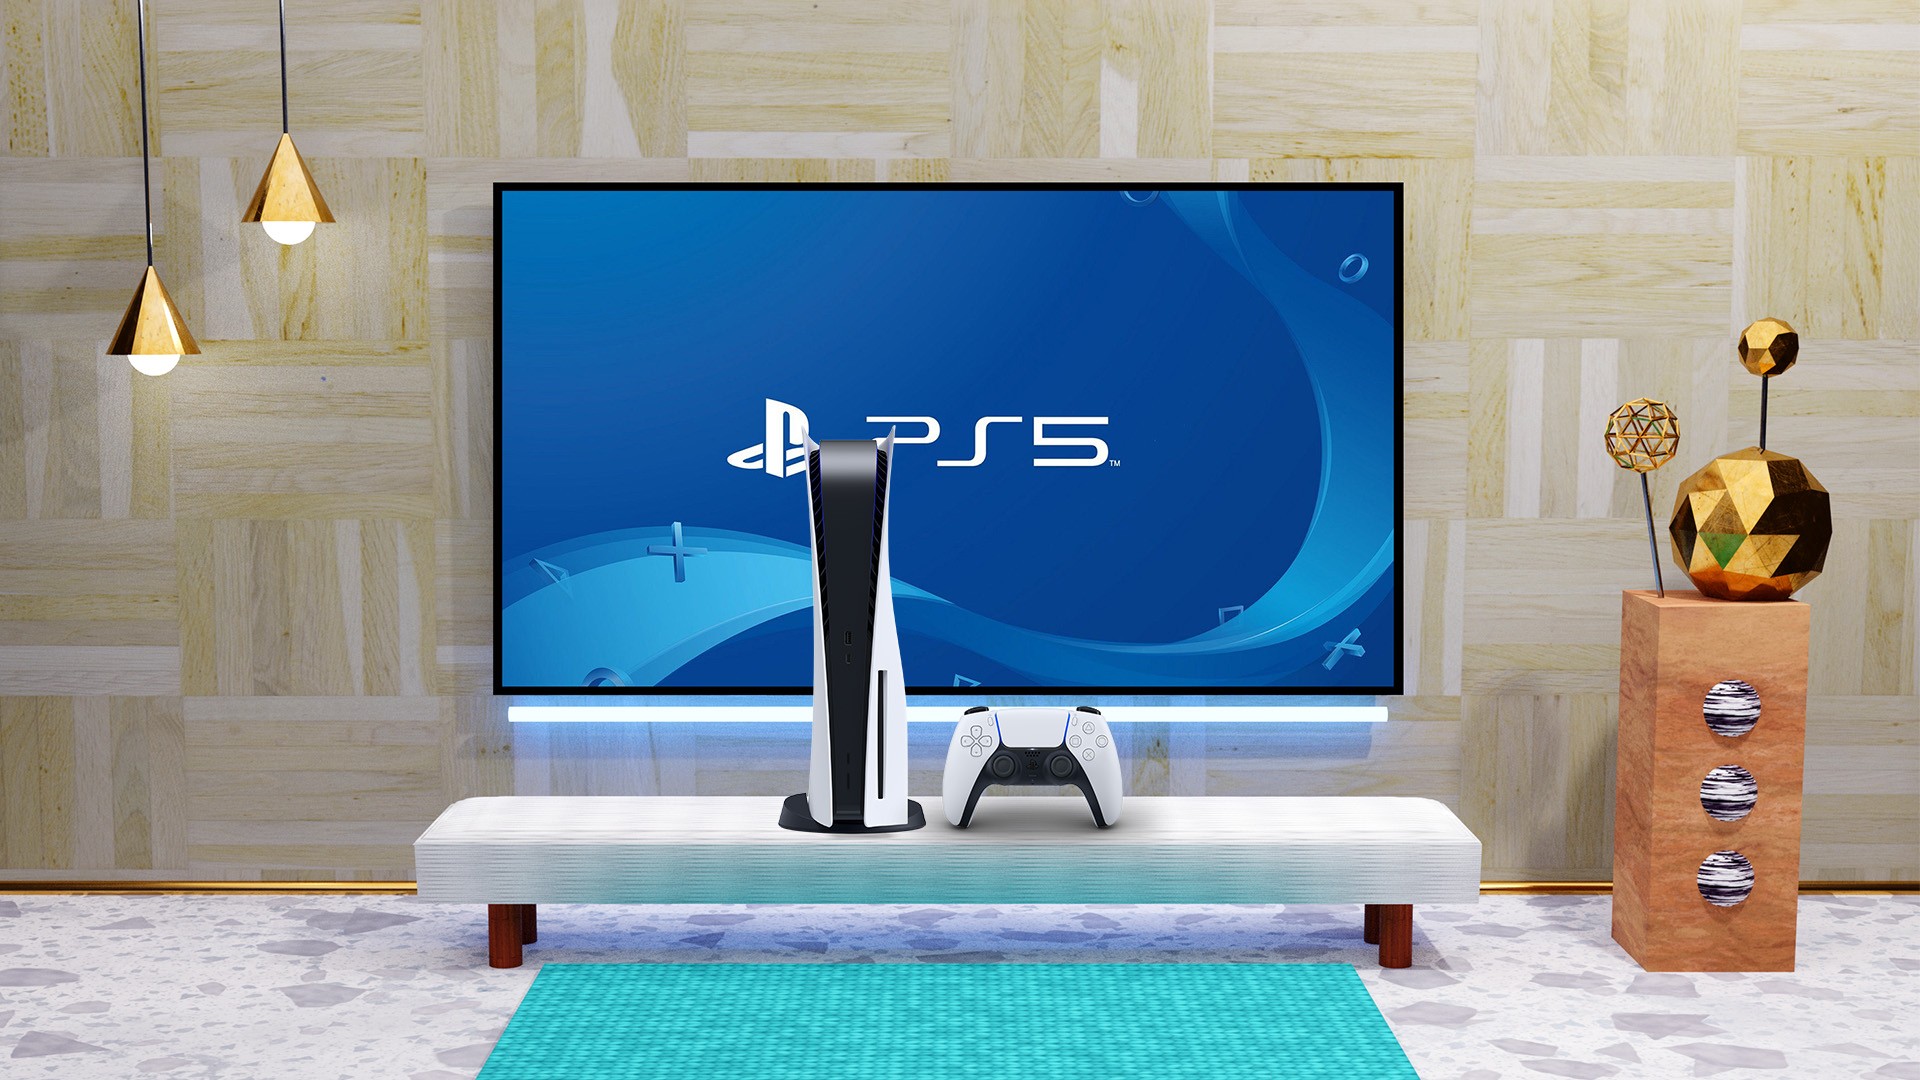 Playstation 5 Usado com Preços Incríveis no Shoptime